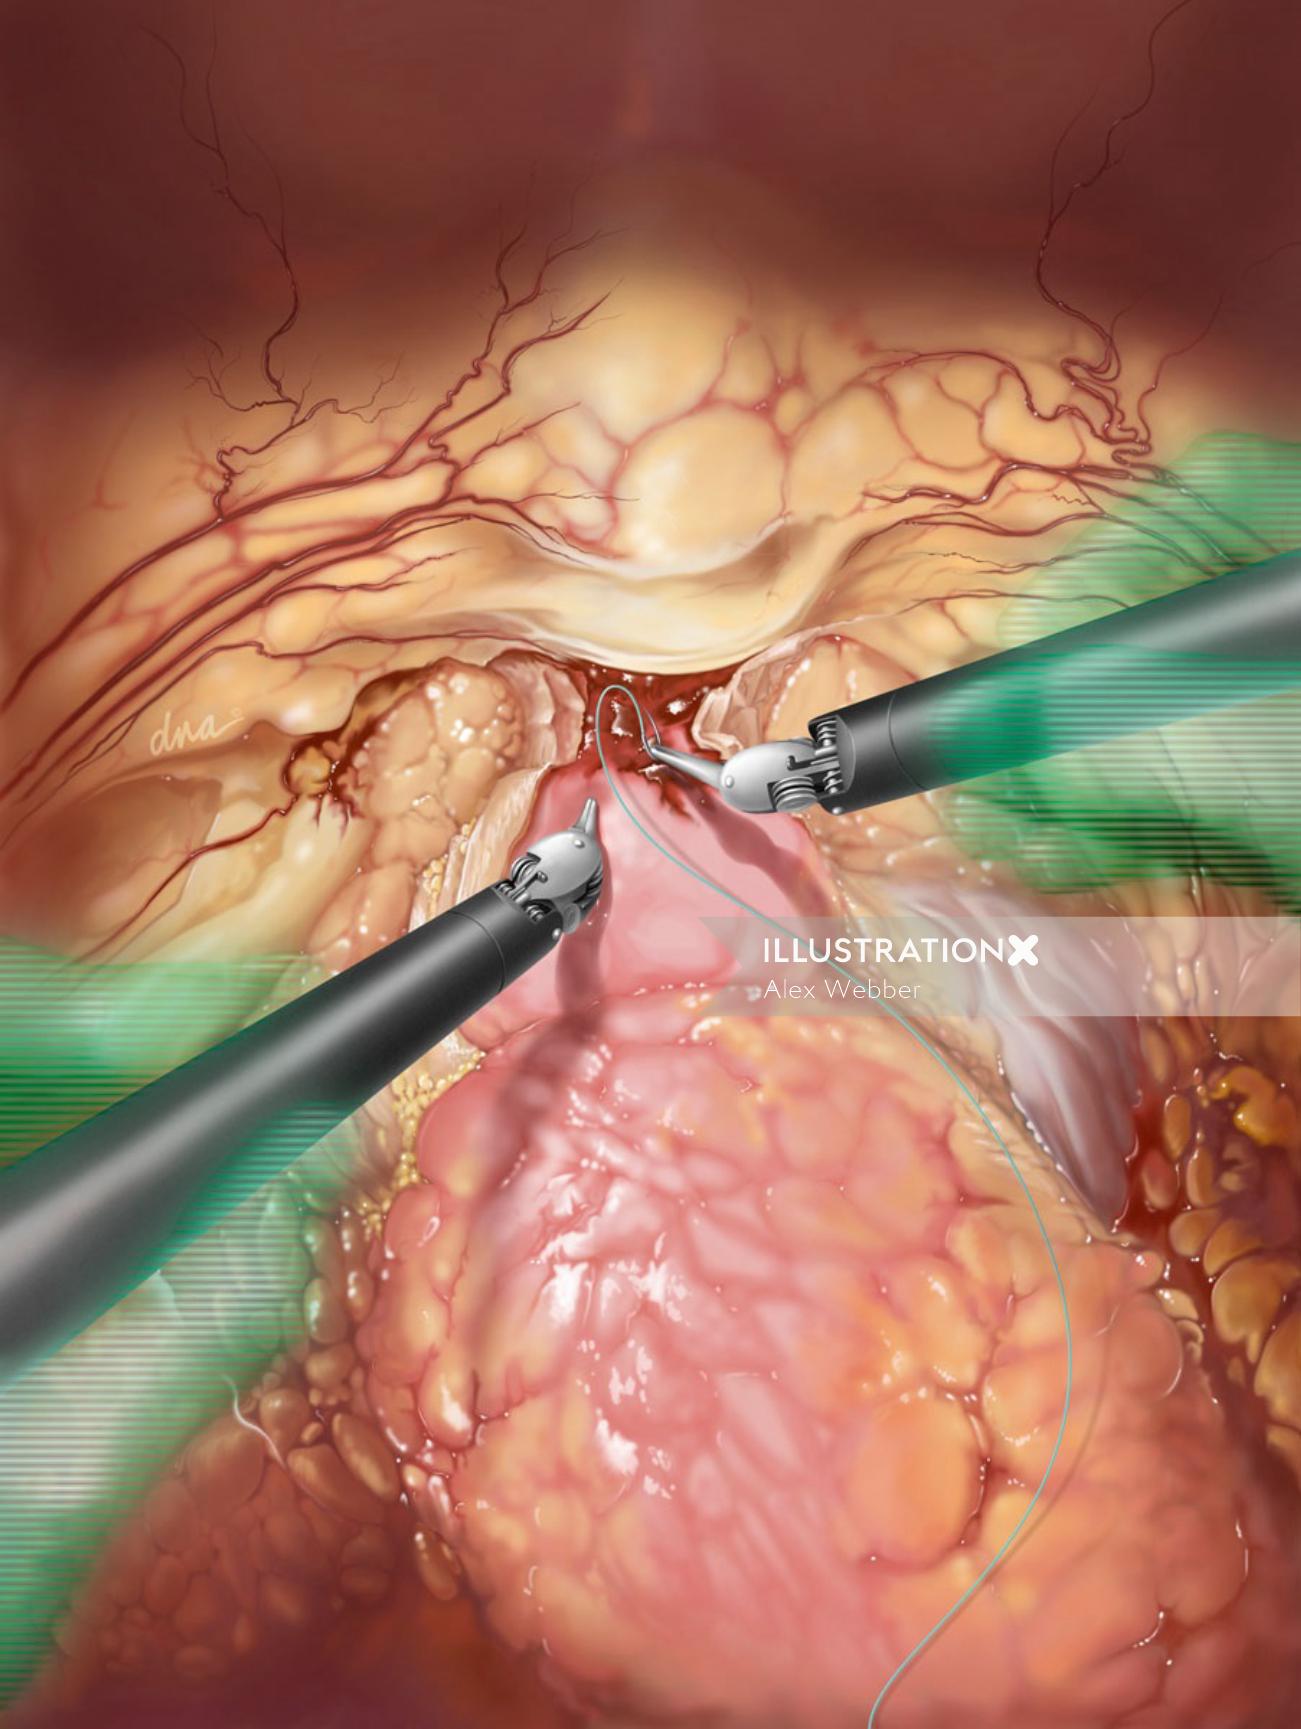 Ilustração de cirurgia de prostatectomia por AlexBaker